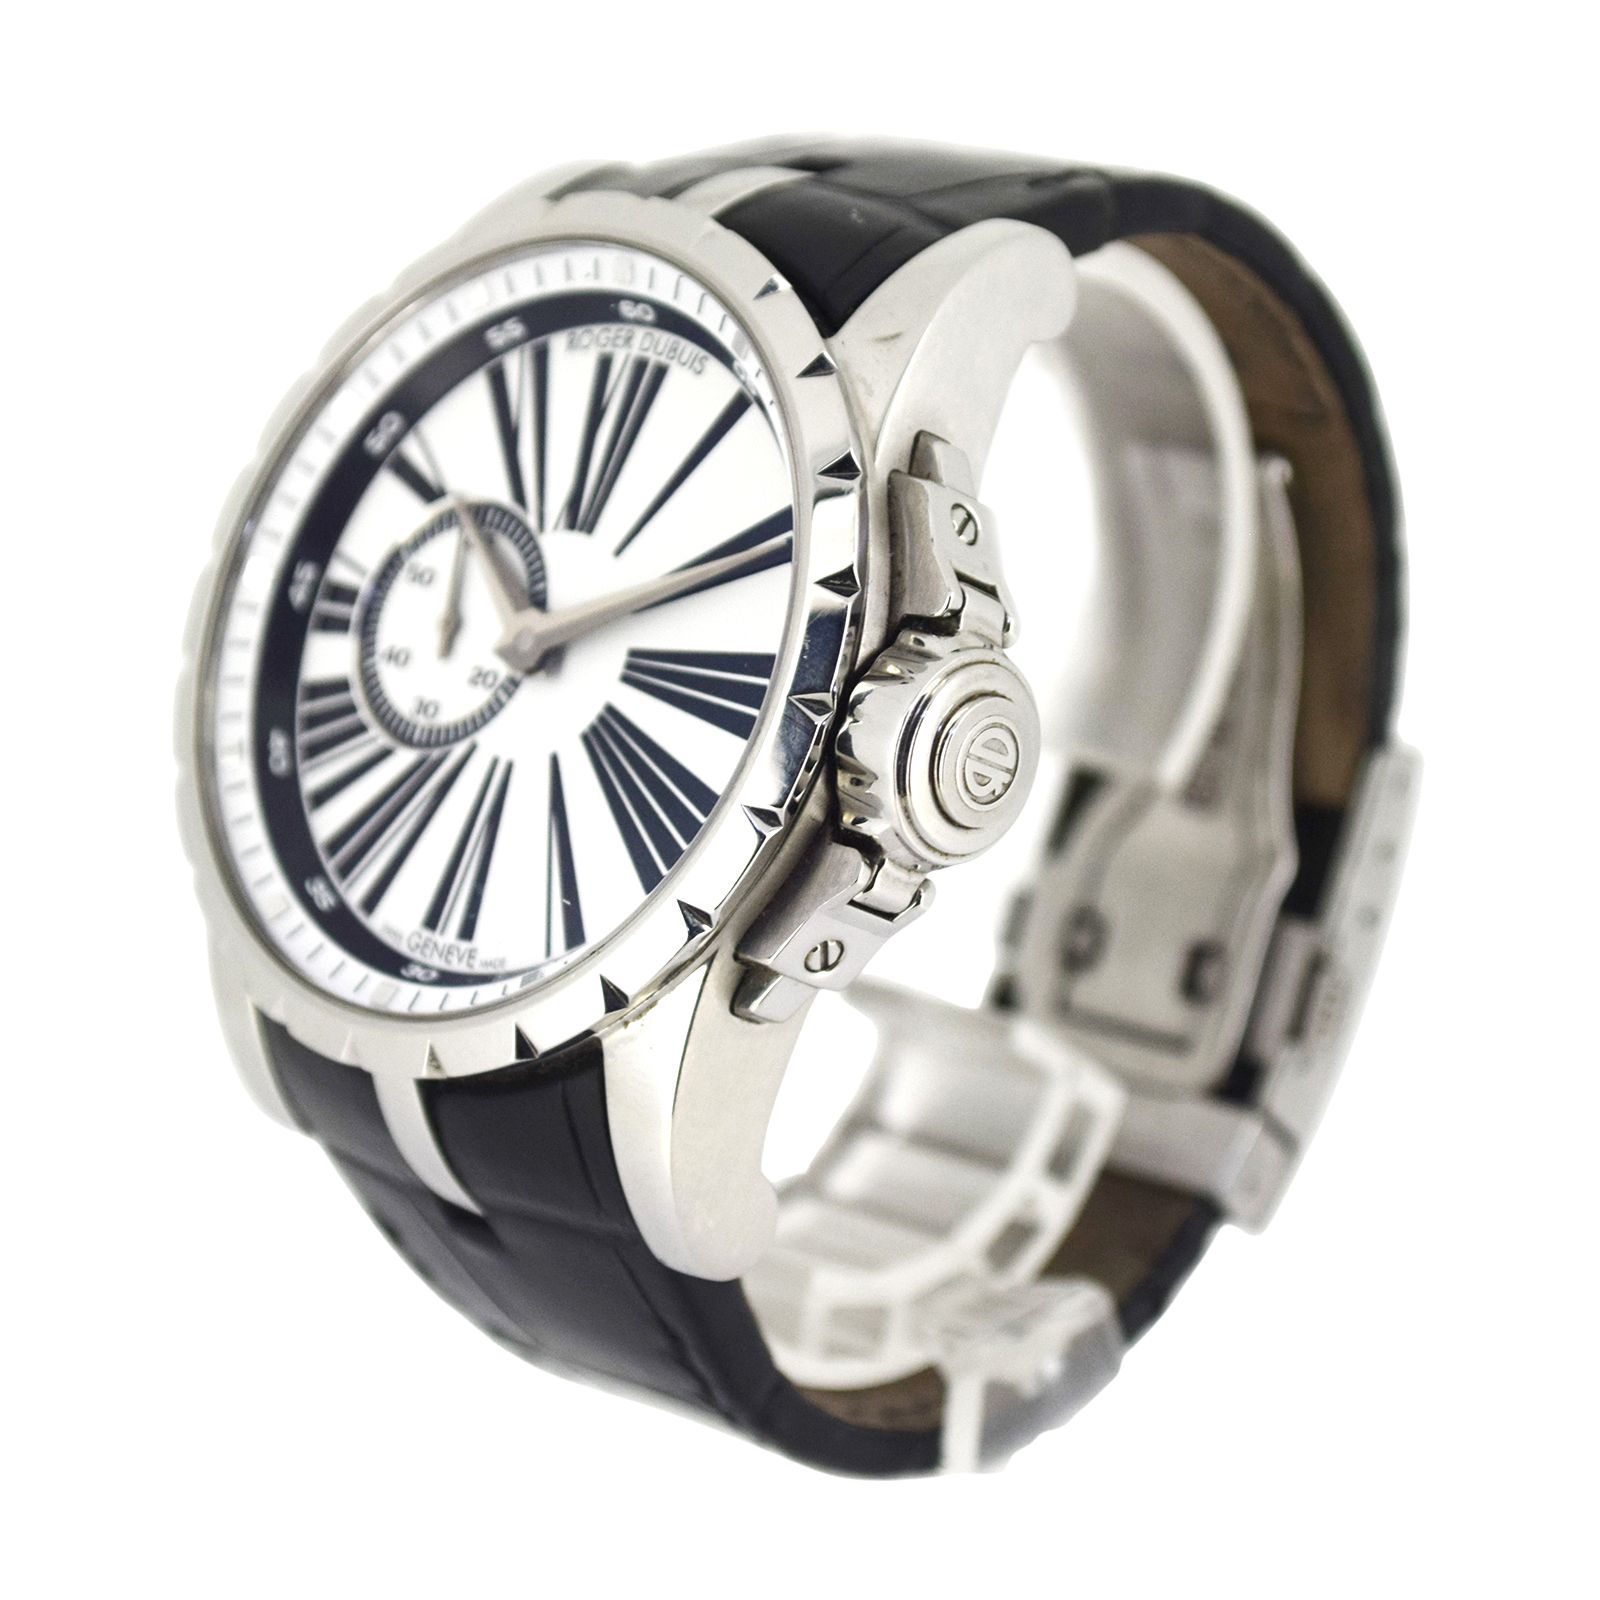 ROGER DUBUIS ロジェデュブイ  エクスカリバー45  DBEX0262  メンズ 腕時計